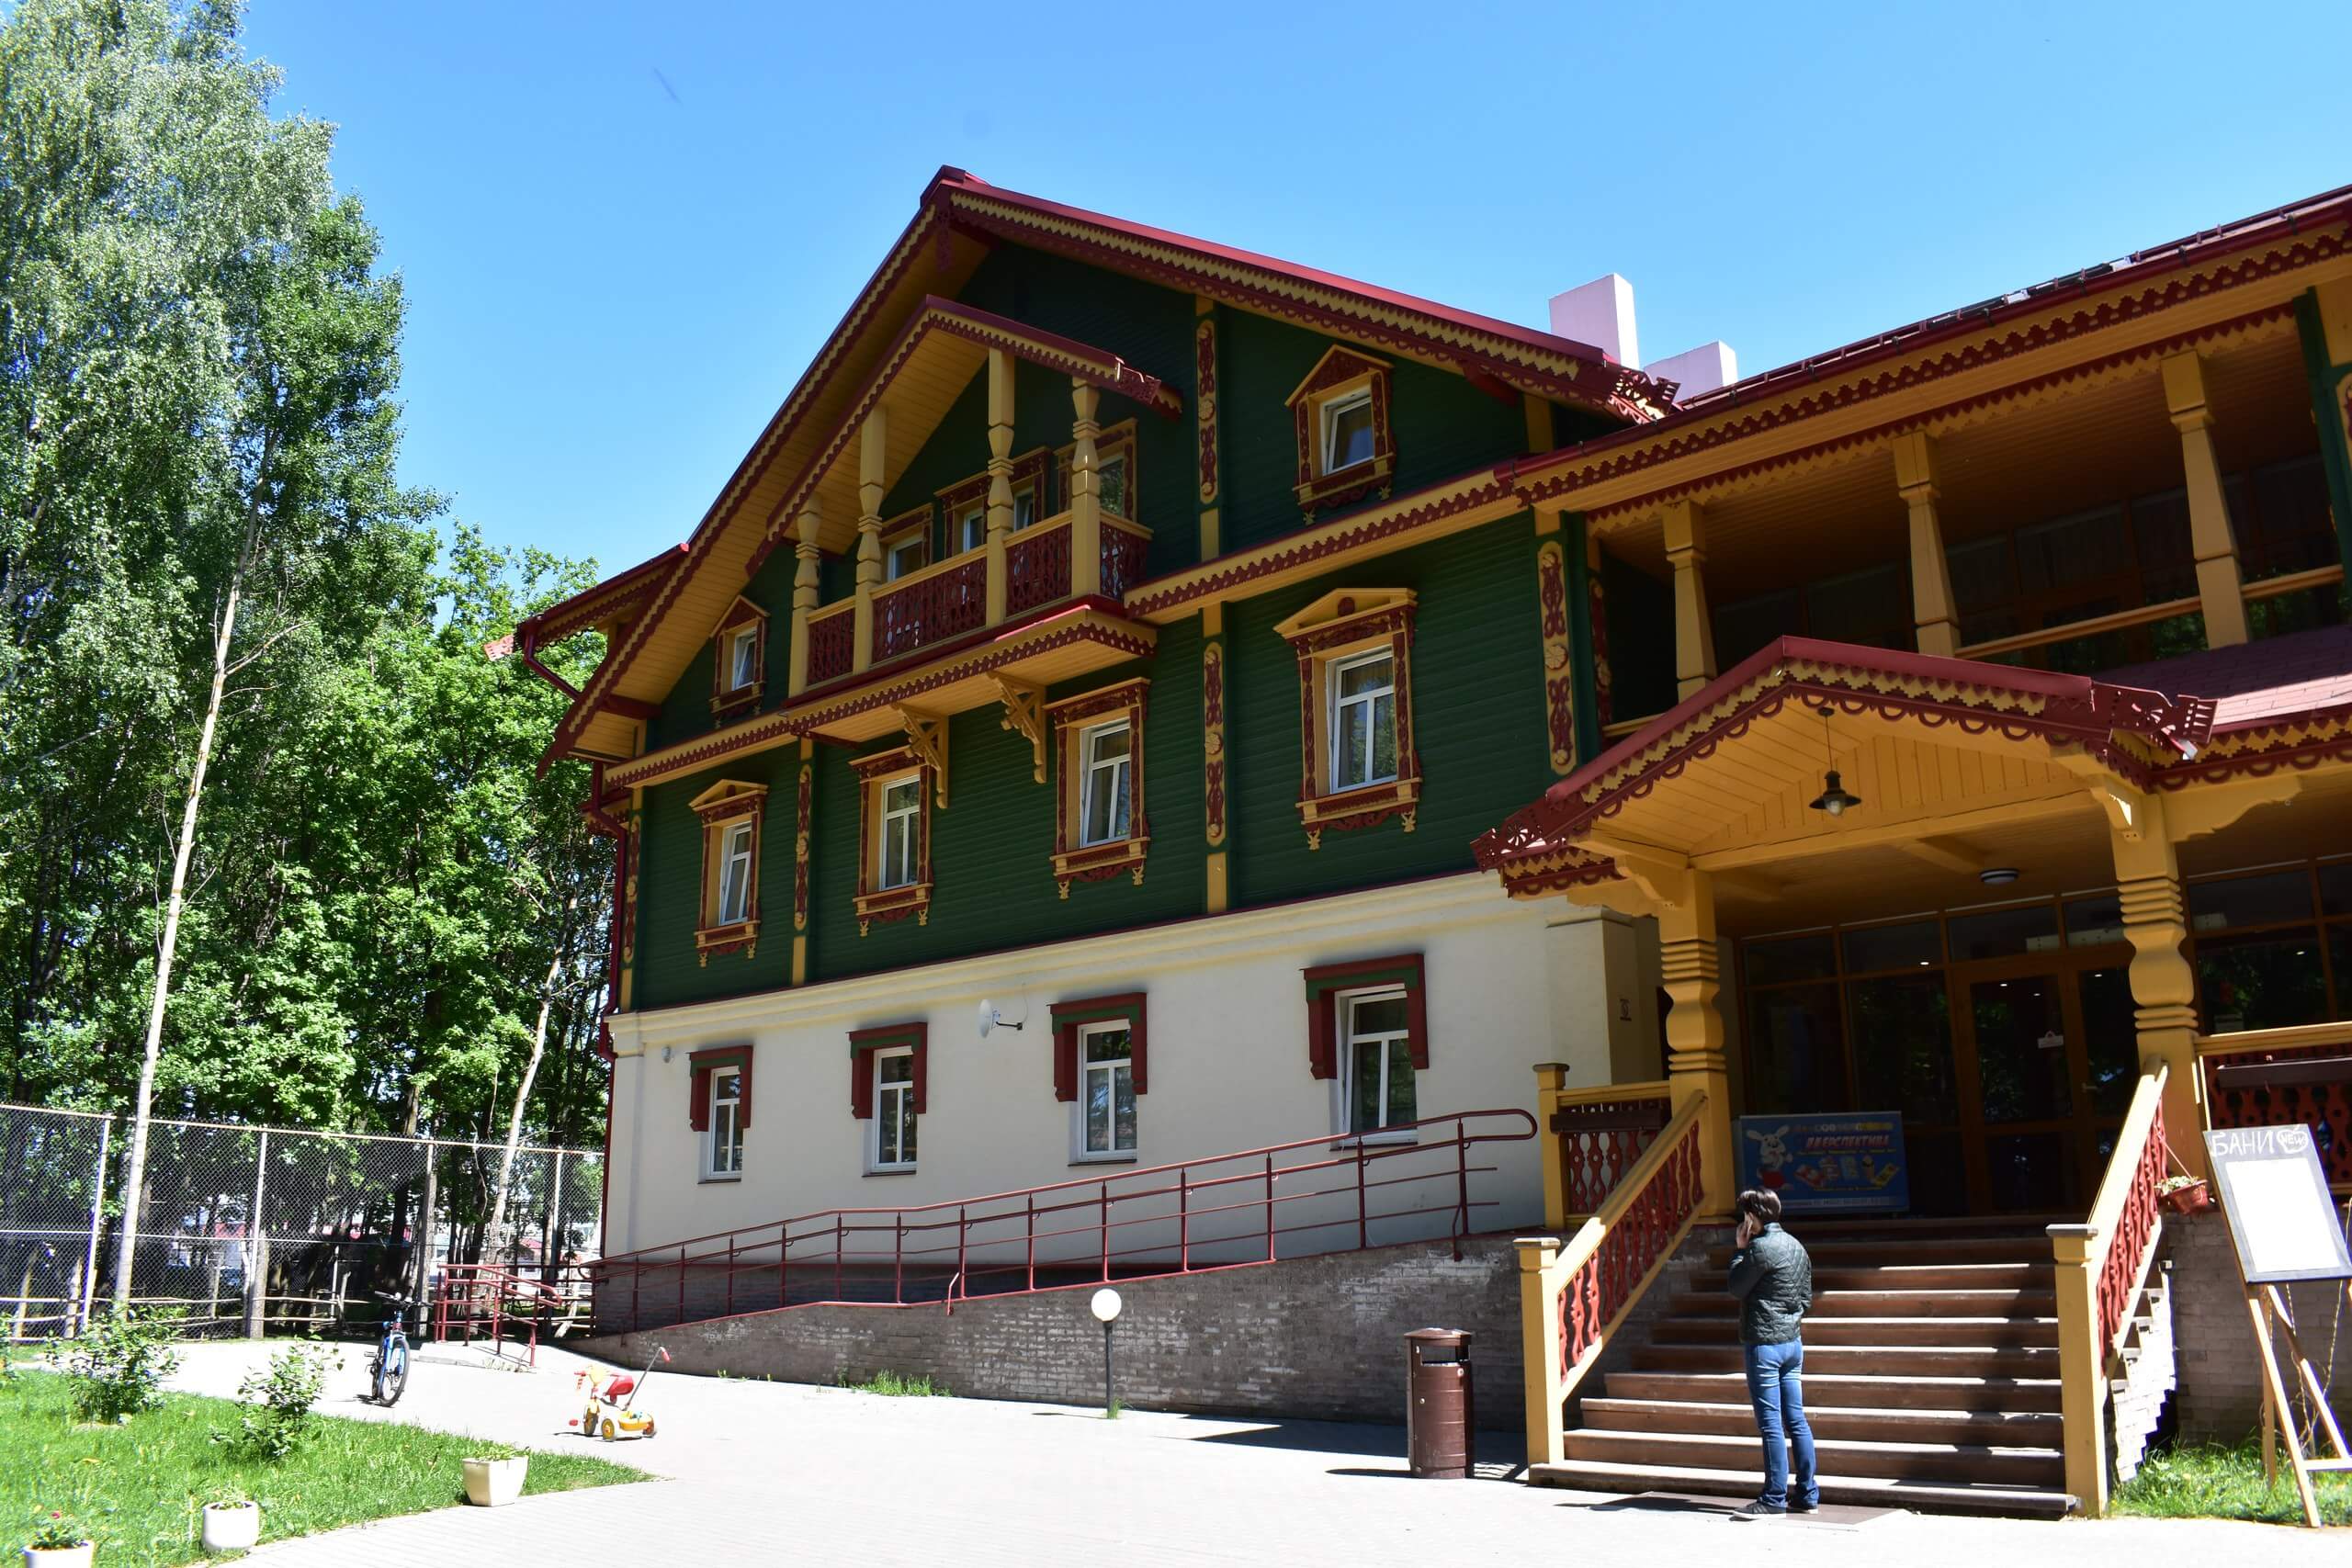 Купеческий дворец с отделкой под старину, в стиле русского деревянного зодчества.